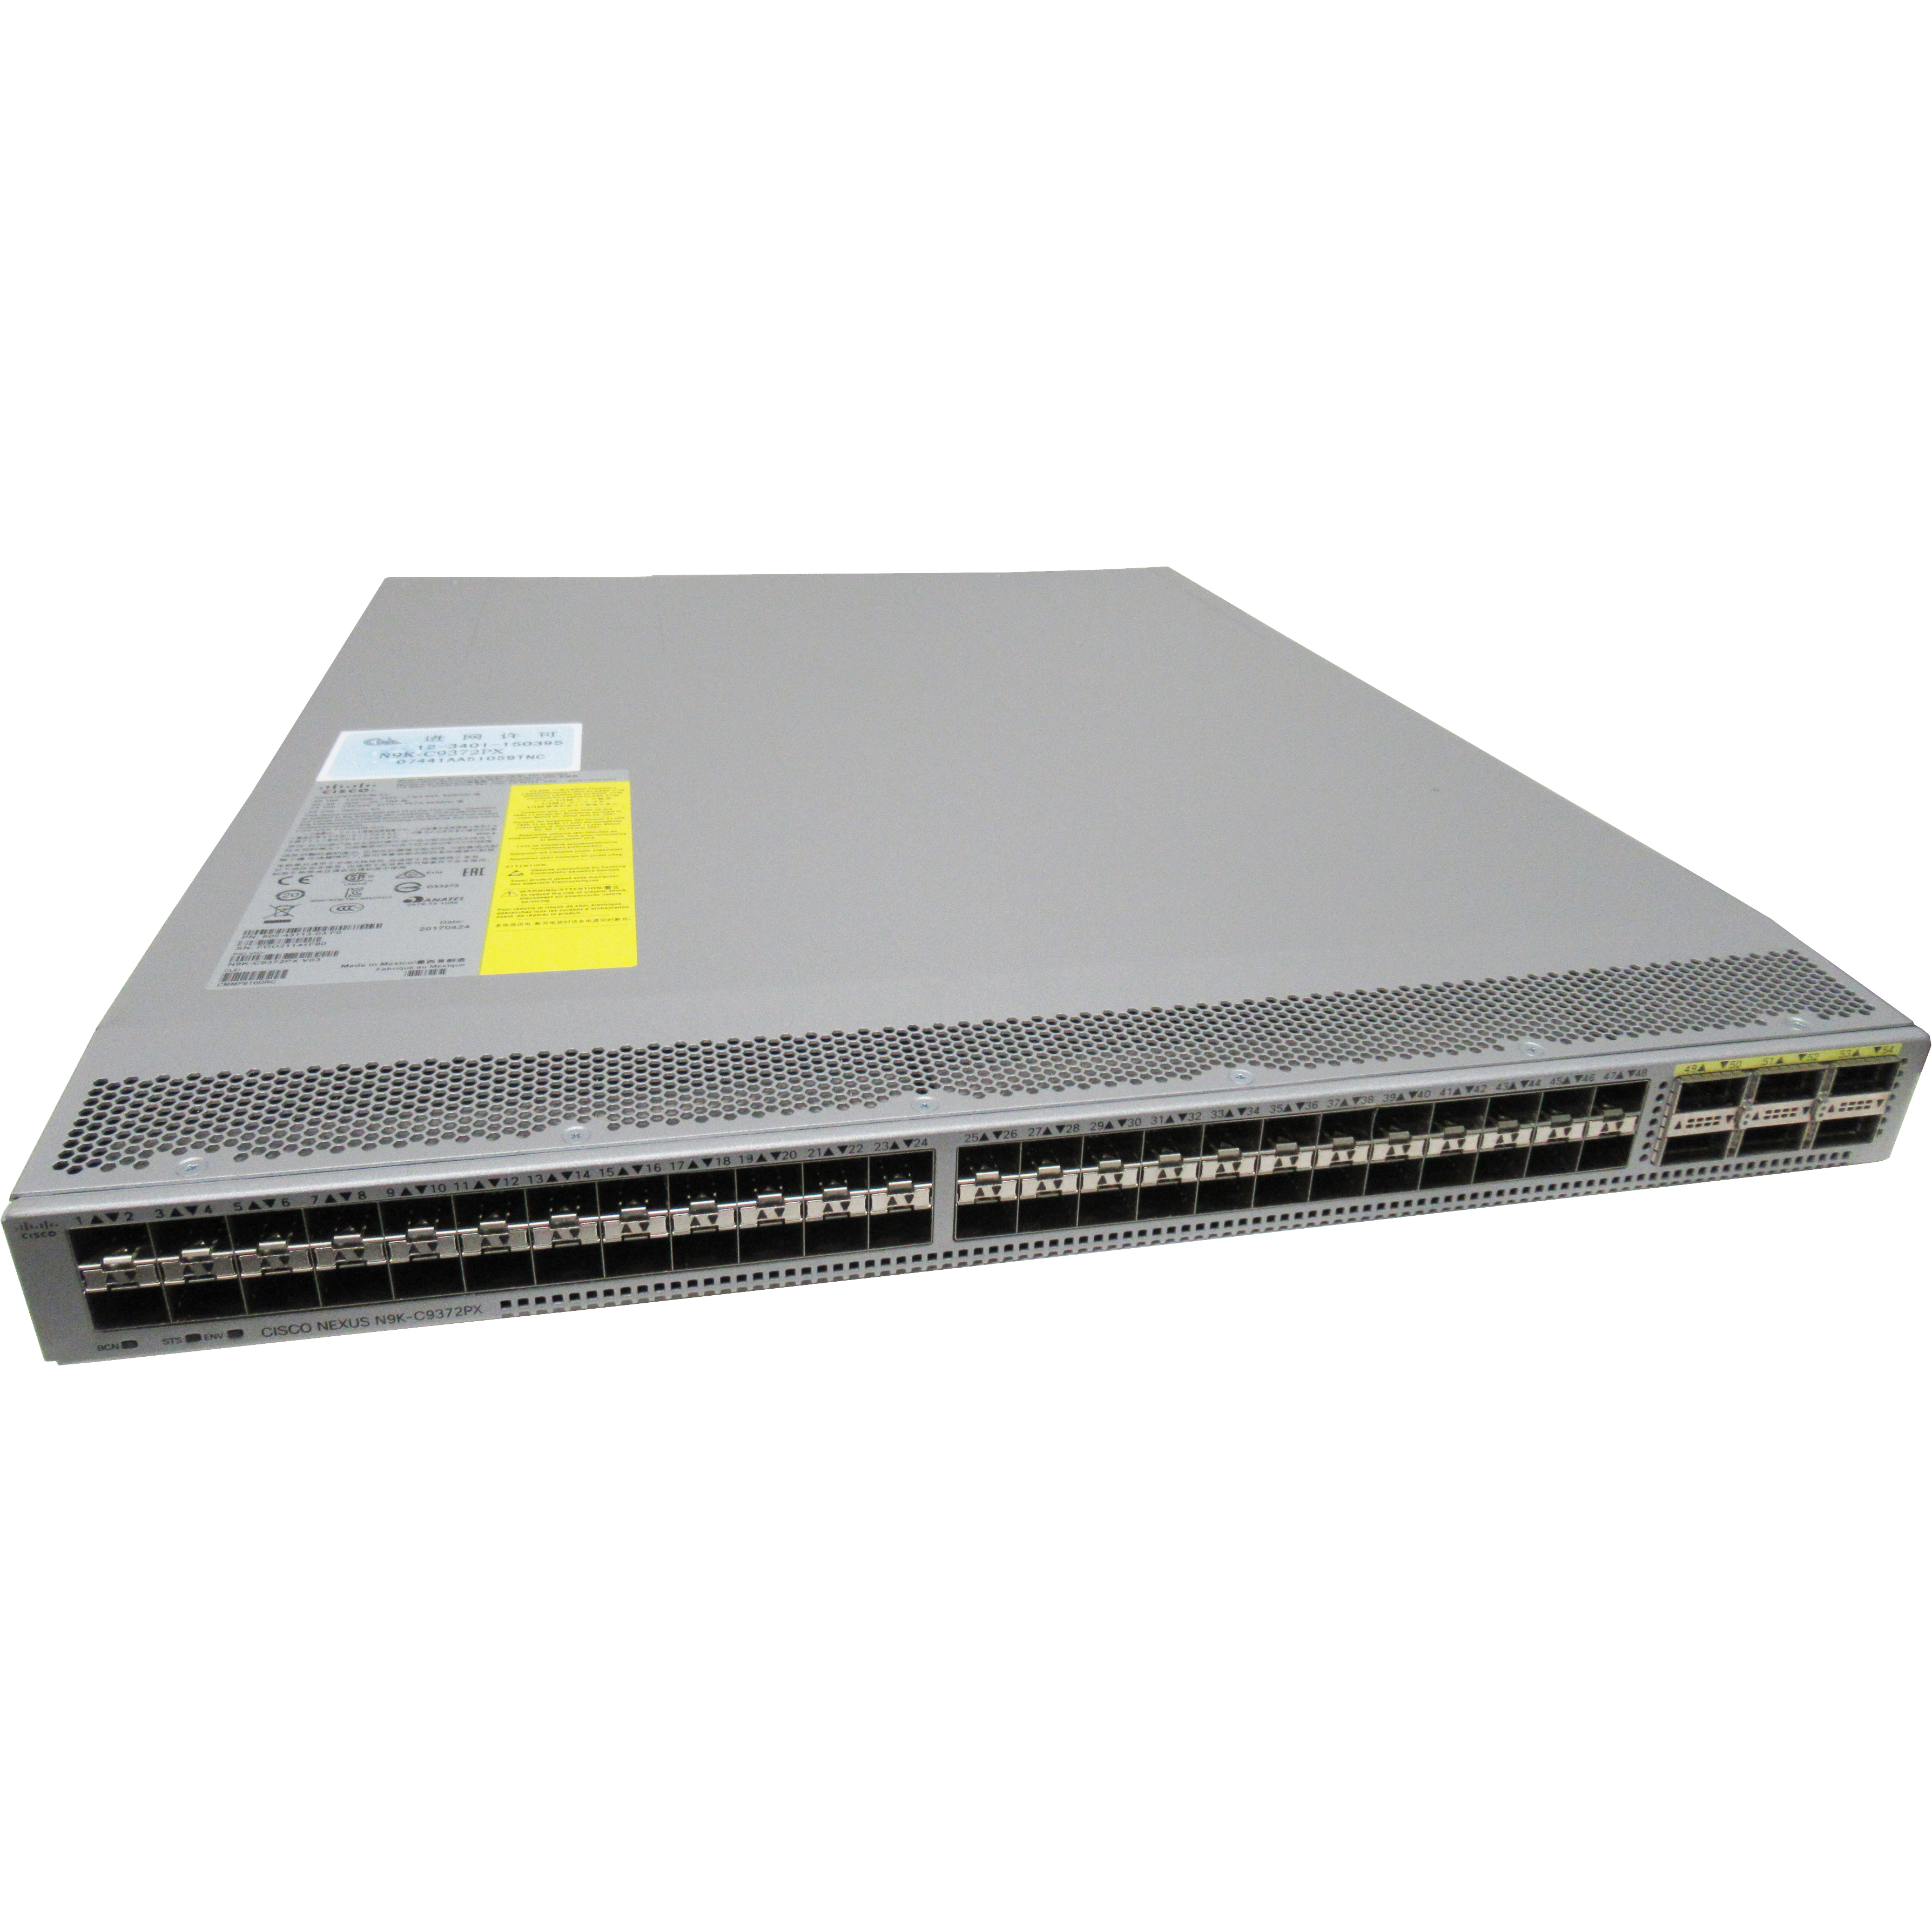 Cisco N9K-C9372PX